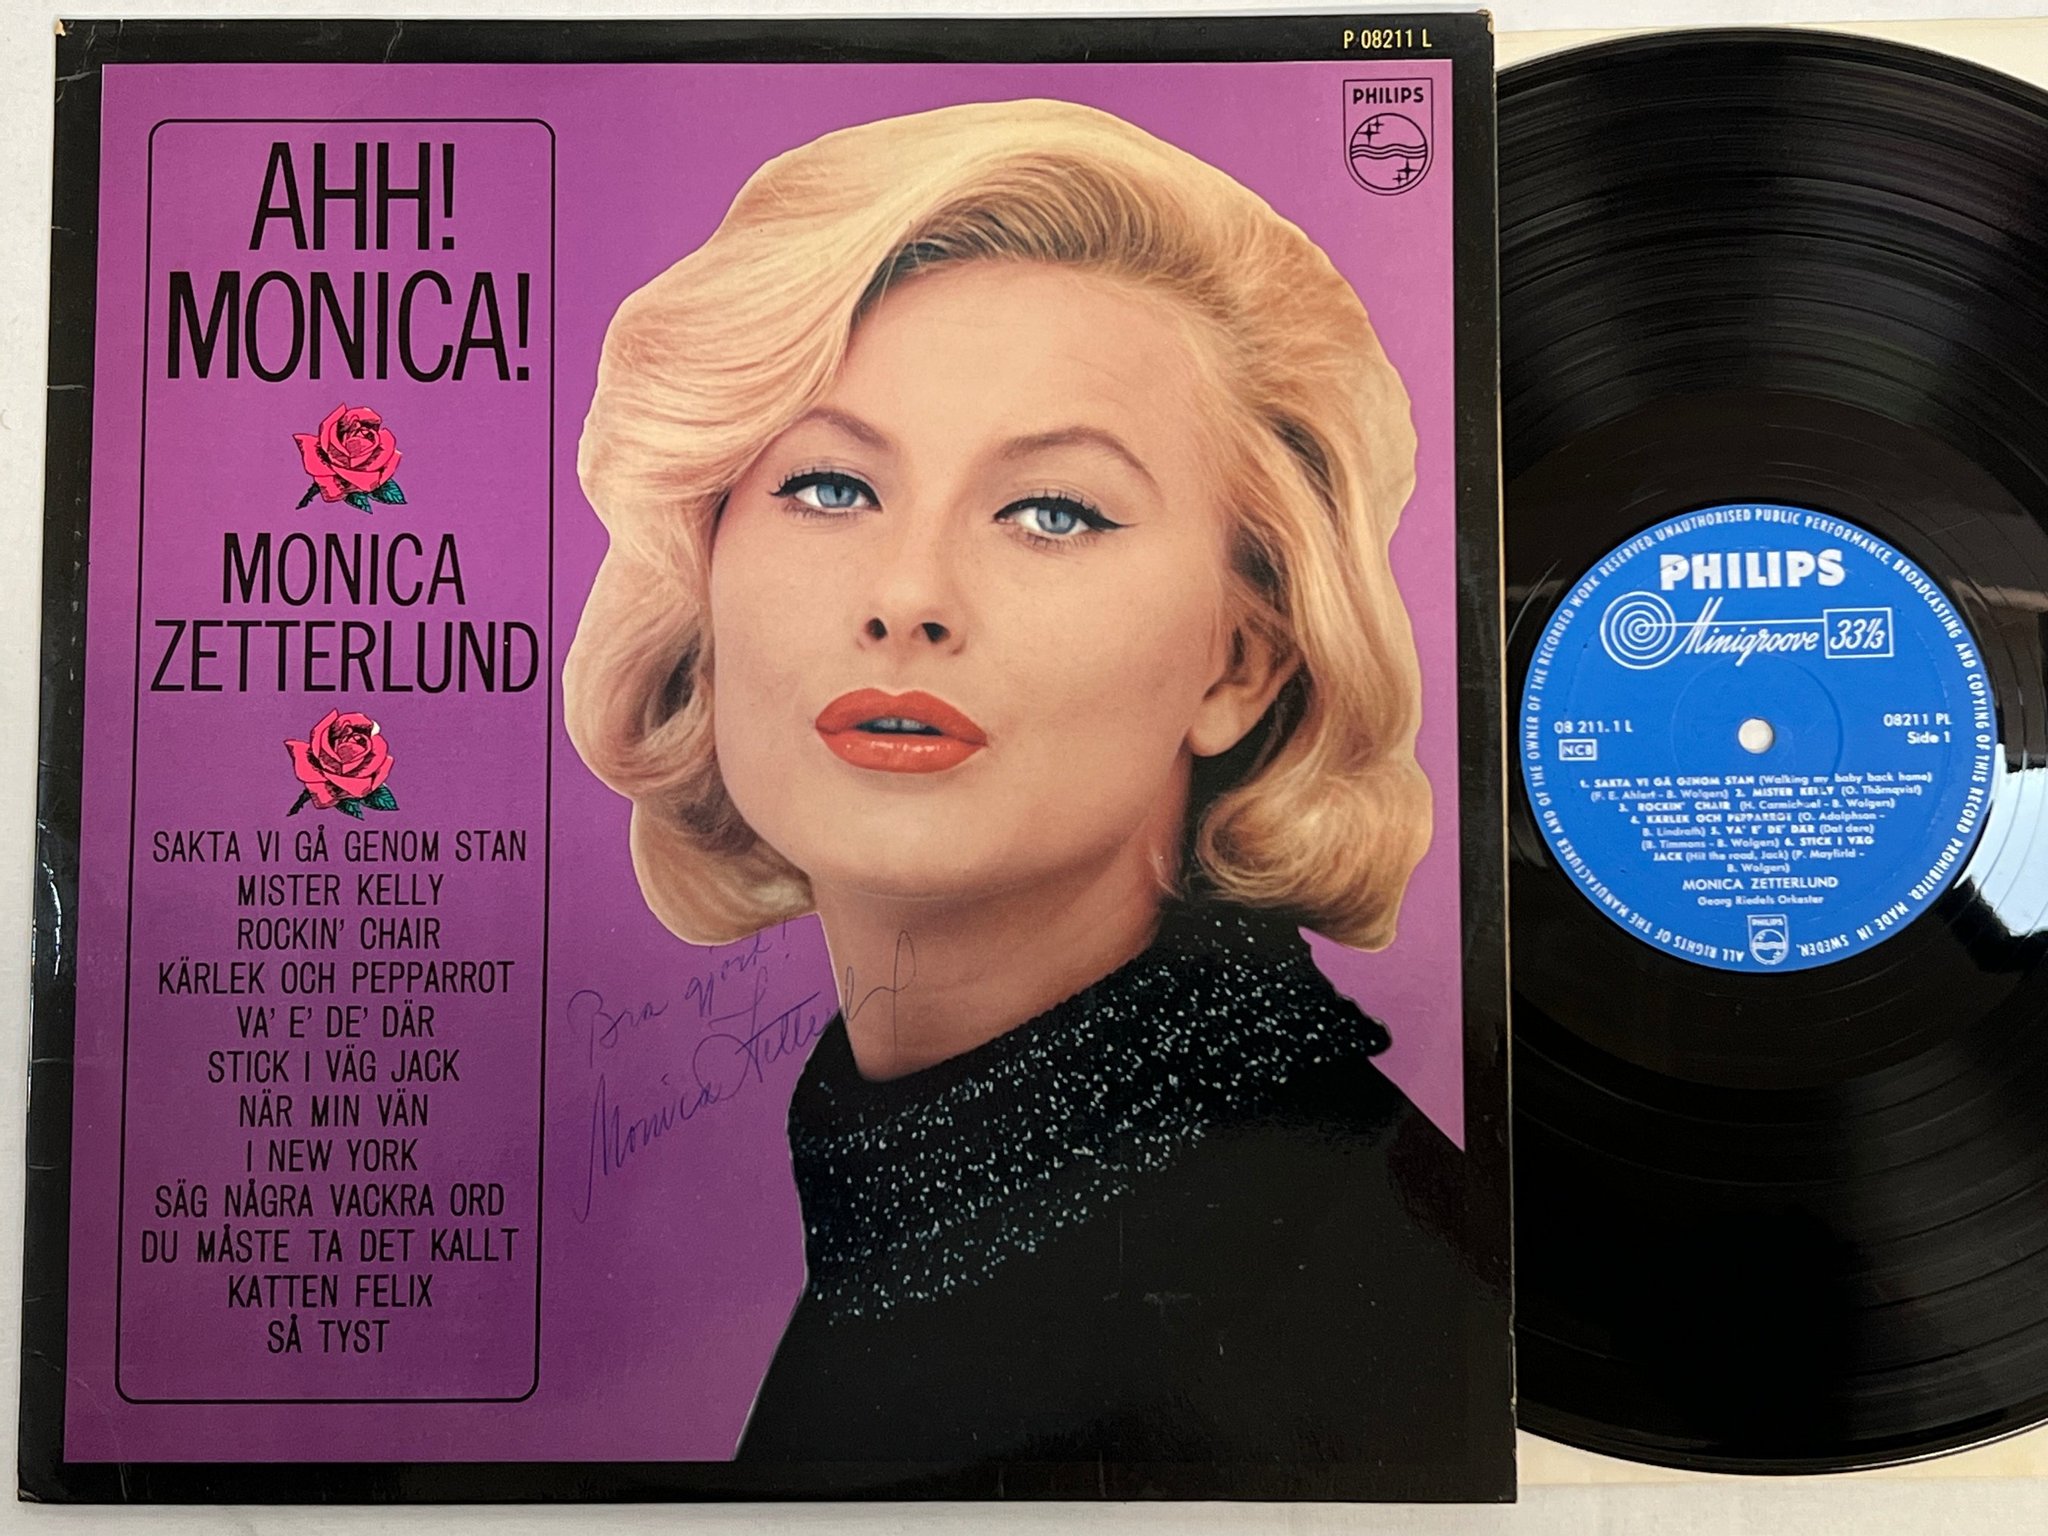 Omslagsbild för skivan MONICA ZETTERLUND Ahh! Monica! LP -62 PHILIPS signerad av finaste Monica ! ! ! 